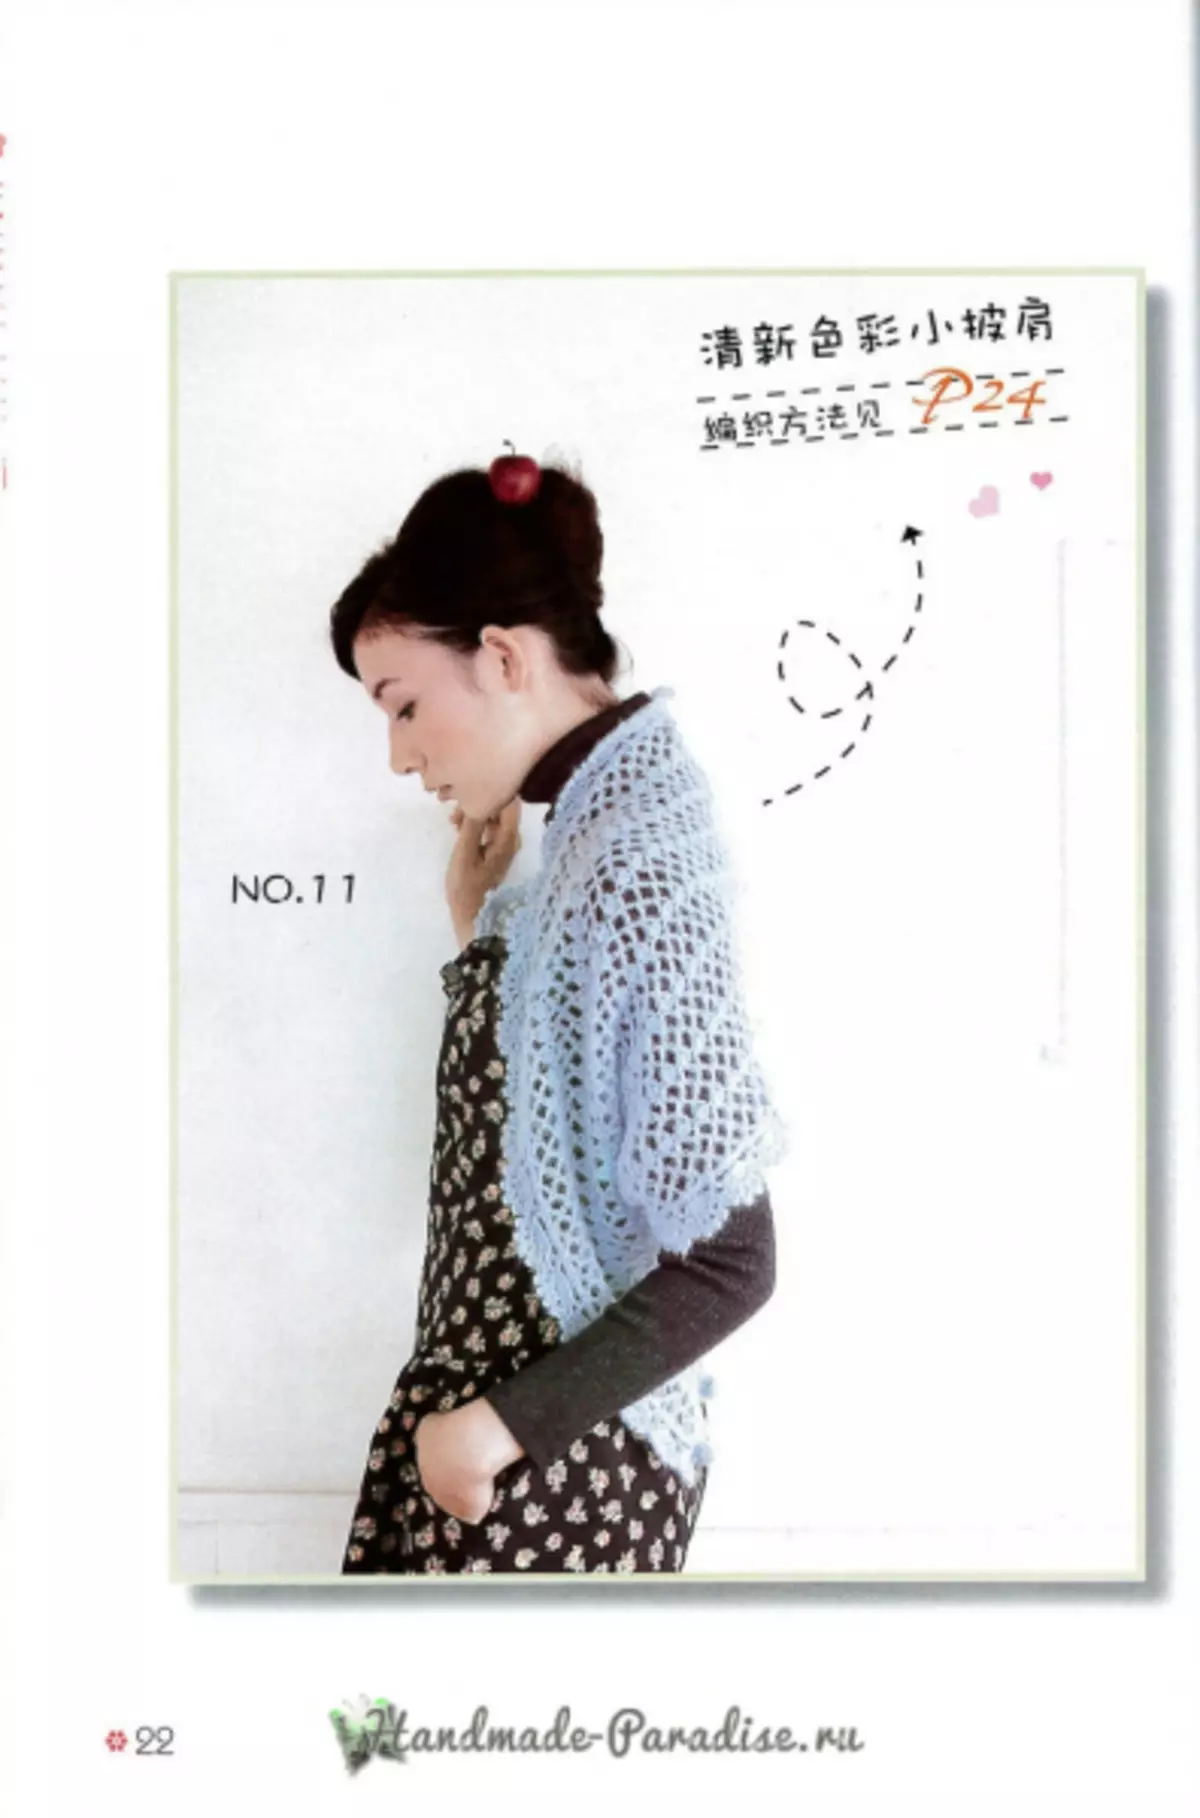 بافندگی کیپ و پونچو. مجله ژاپنی با طرح ها